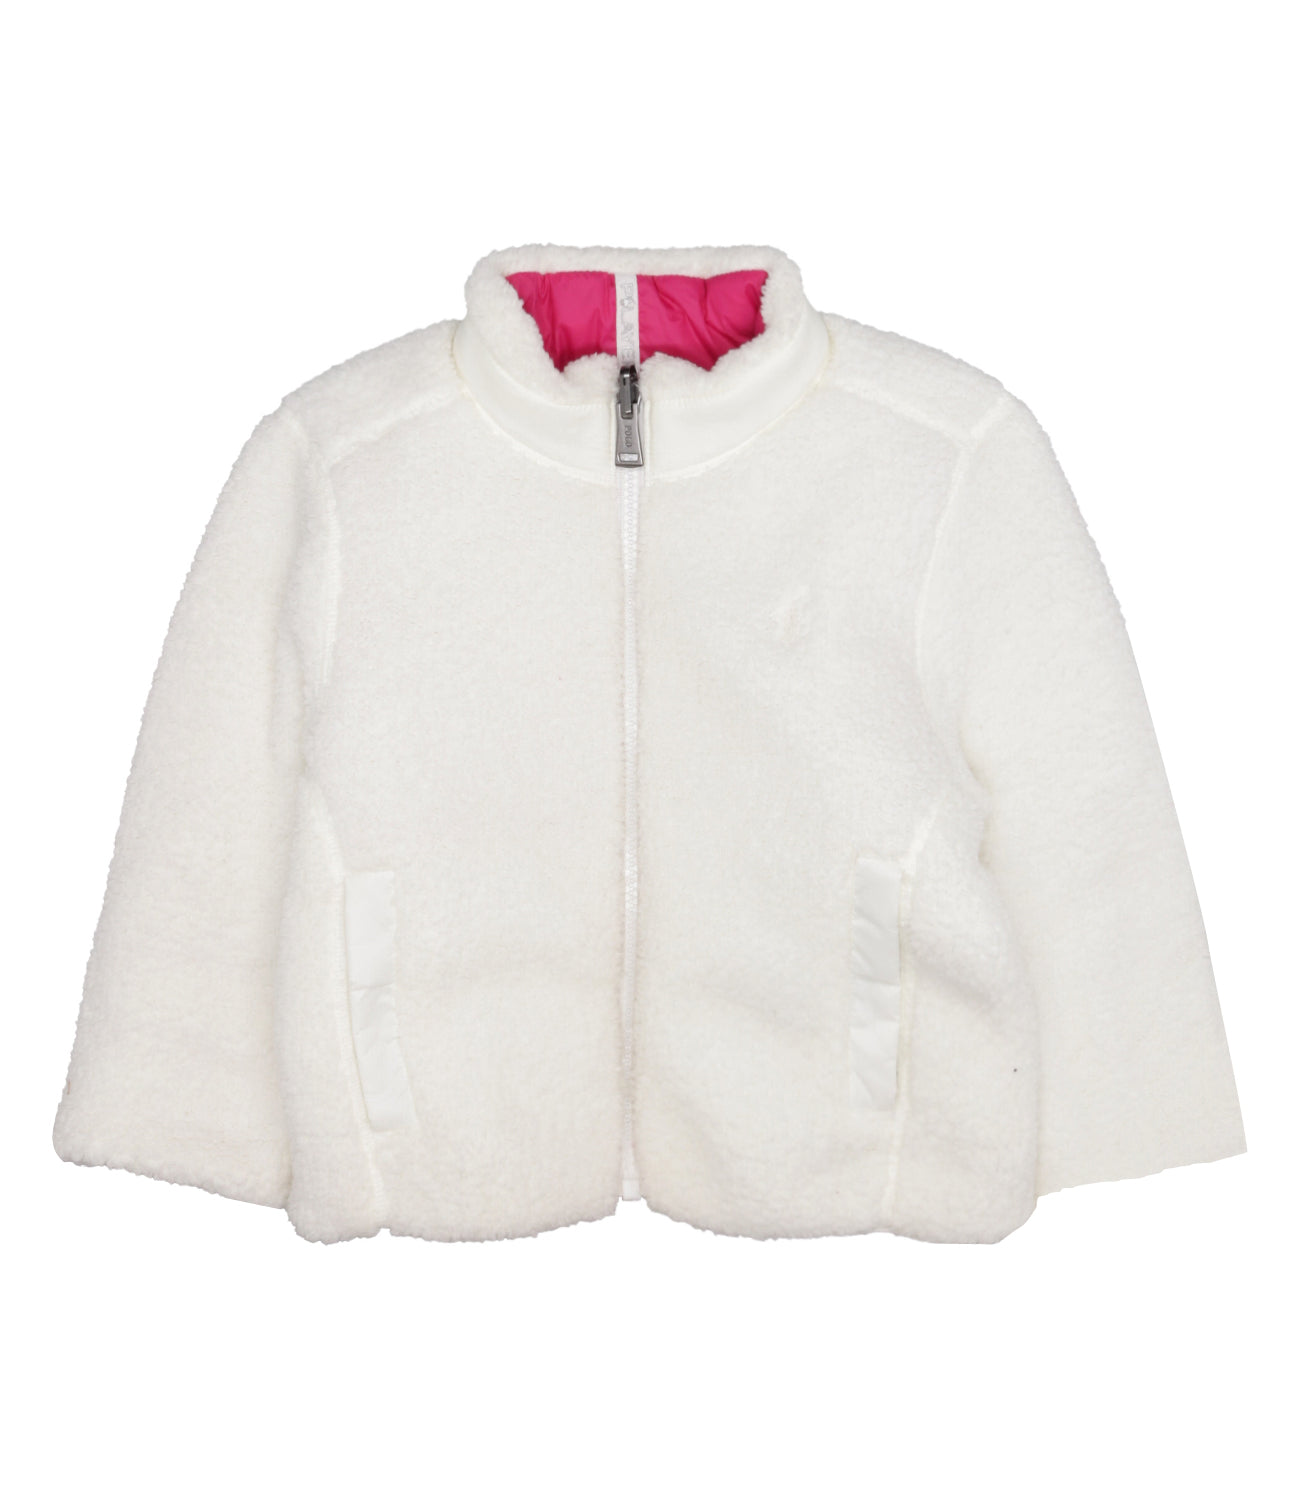 Ralph Lauren Childrenswear | Pink and White Jacket